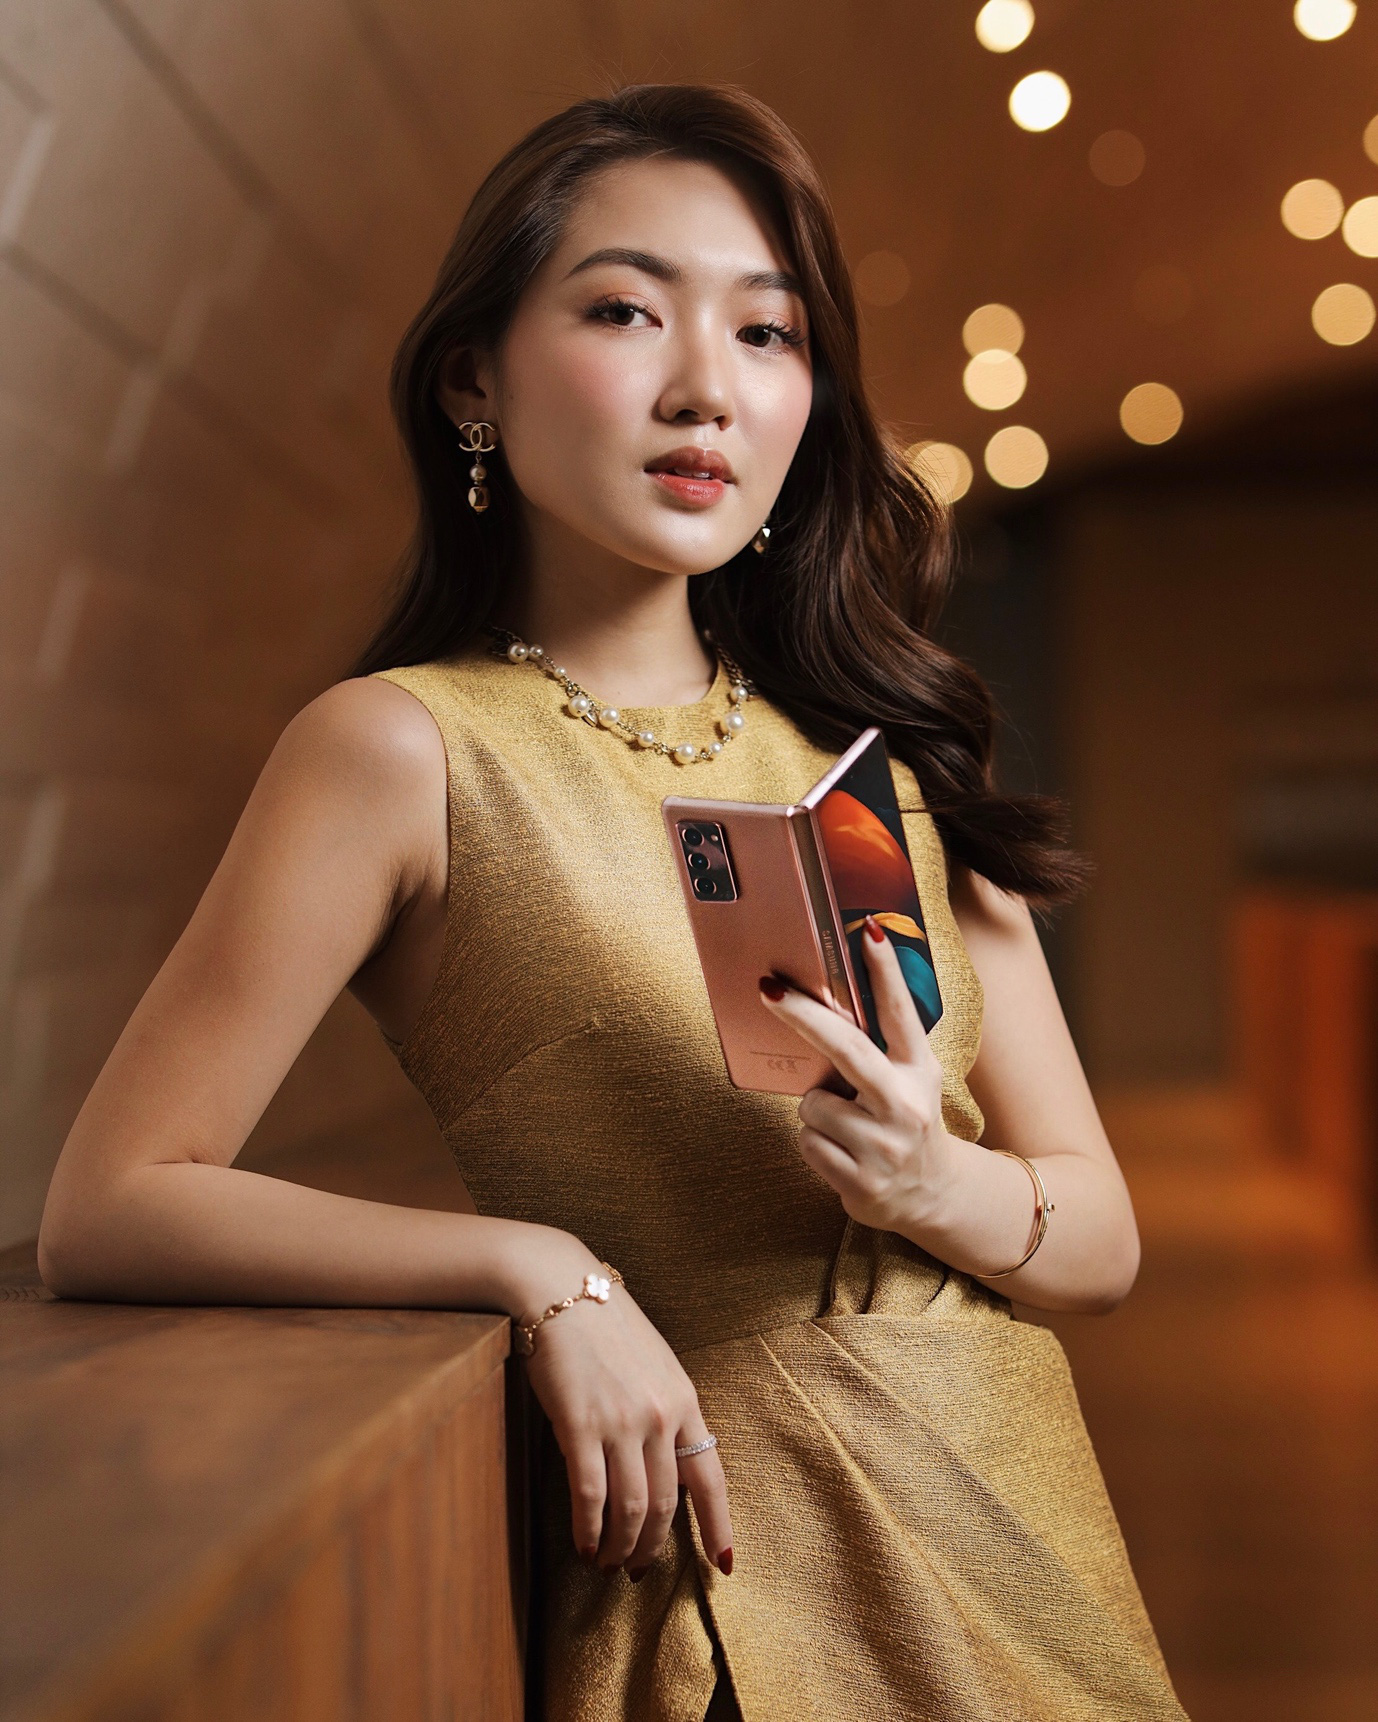 Giới trẻ thời thượng thể hiện đẳng cấp bản thân với smartphone màn hình gập Galaxy Z Fold2 của Samsung - Ảnh 2.